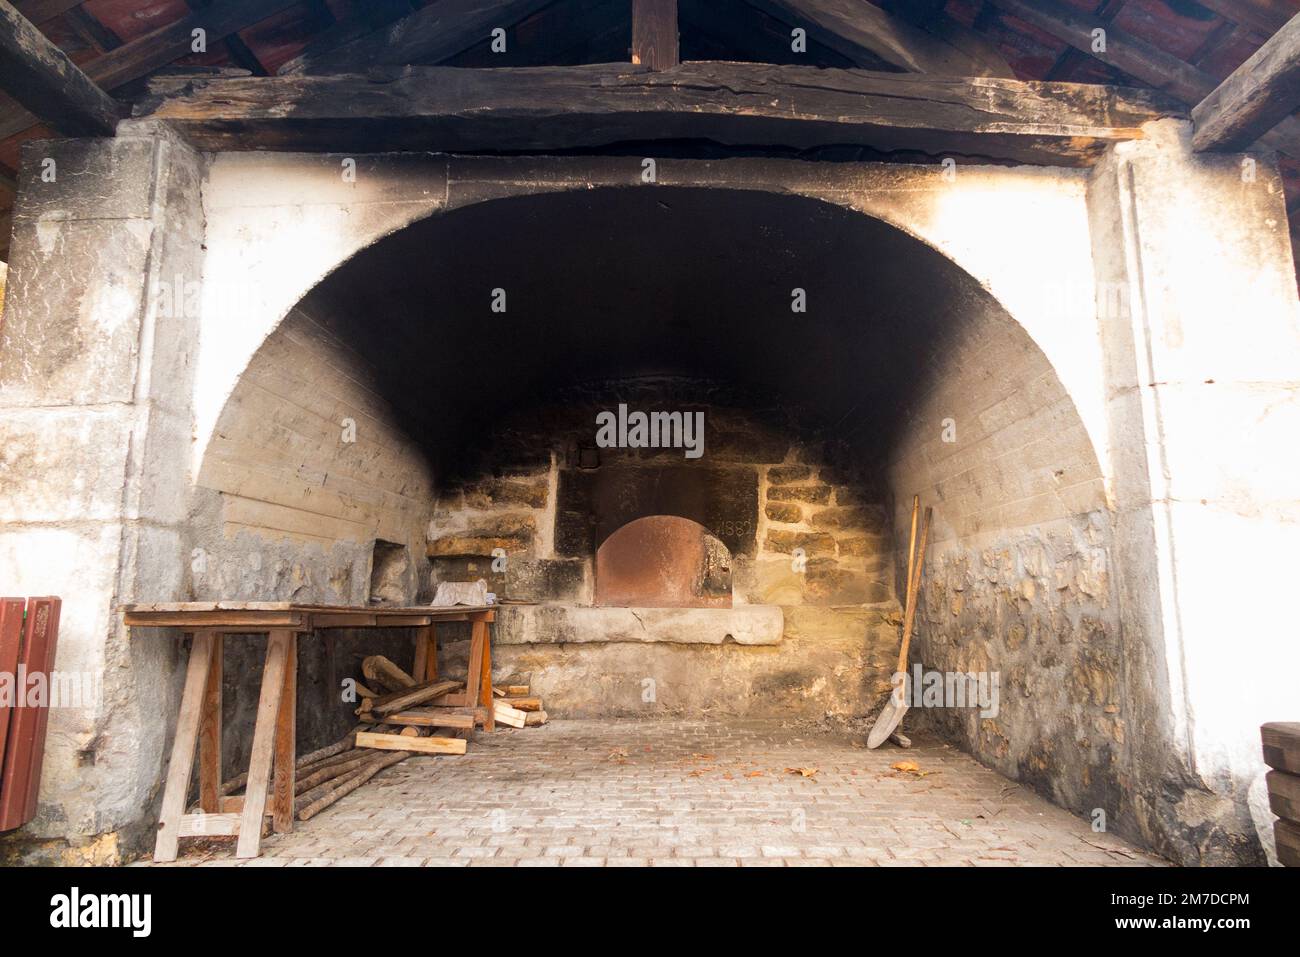 Der vier banale Ofen (Englisch: Gemeindeofen) war eine feudale Institution im mittelalterlichen Frankreich, die von französischen Dorfbewohnern zum Kochen von Backbrot genutzt wurde. Vions Village in SE France (133) Stockfoto